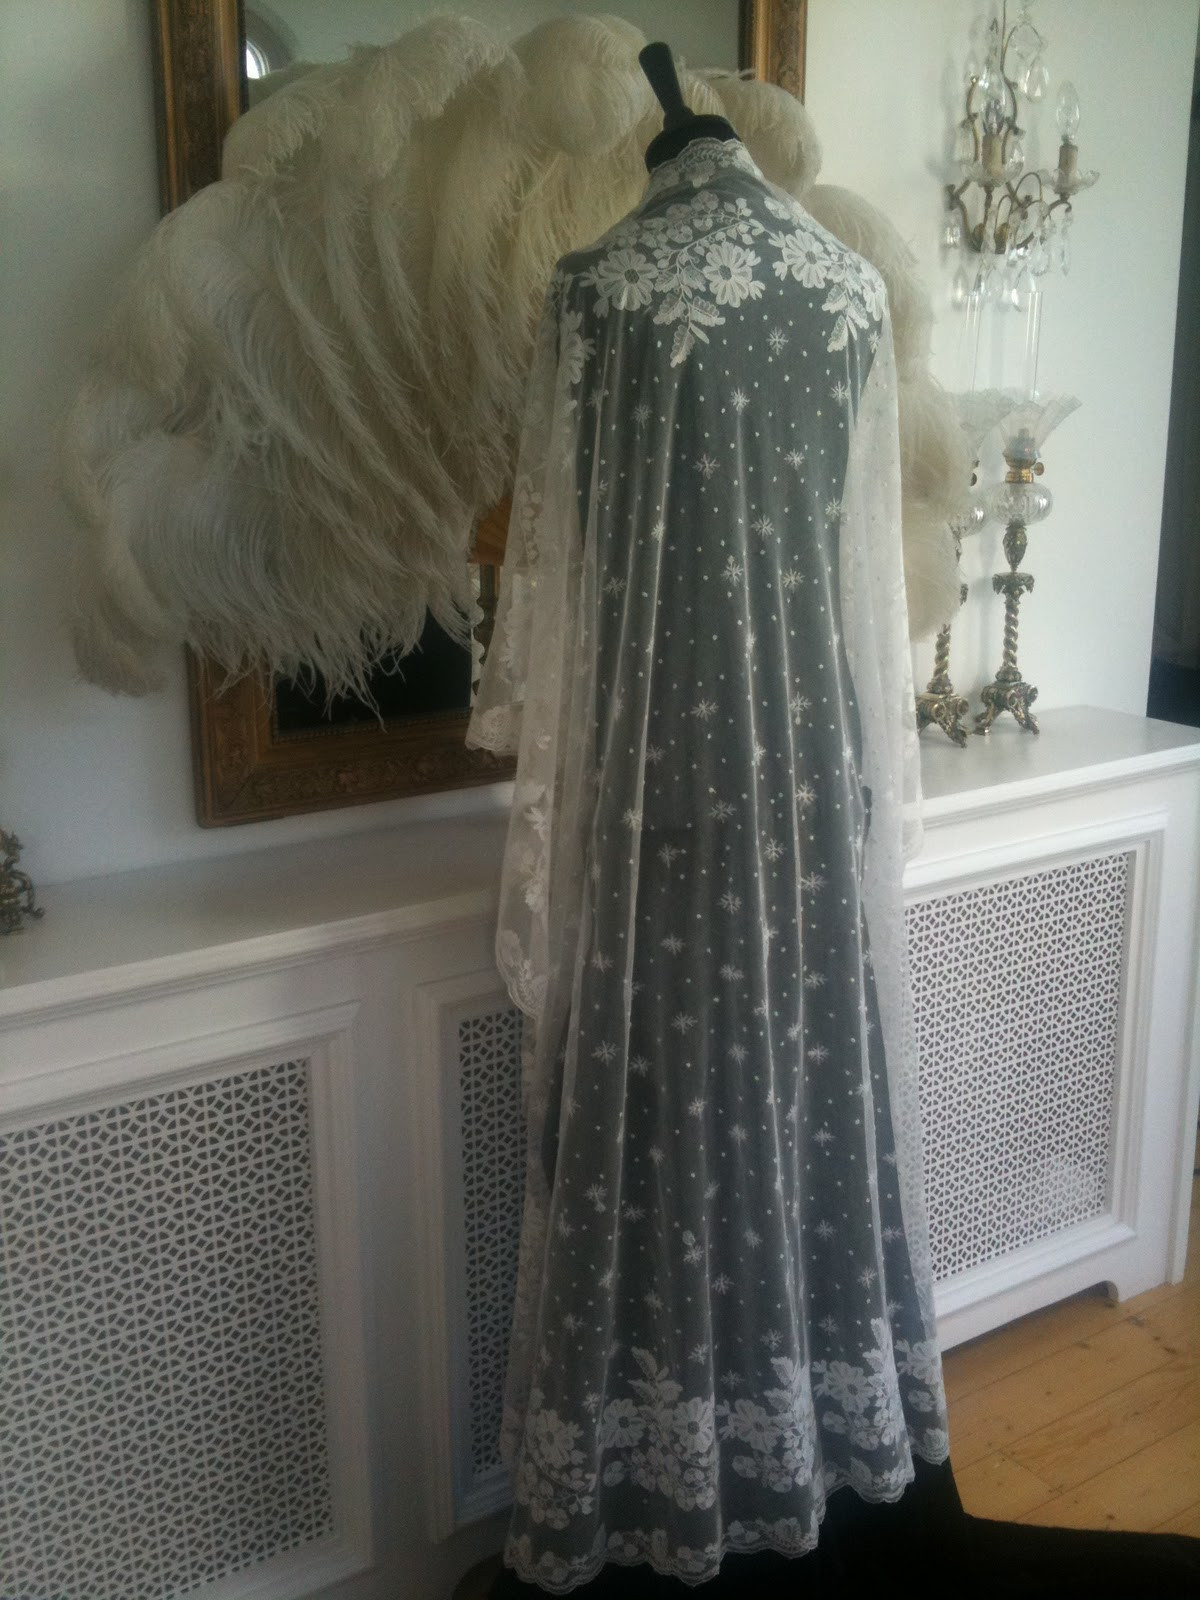 Irish Lace Wedding Veils
 Rosemary Cathcart Antique Lace and Vintage Fashion